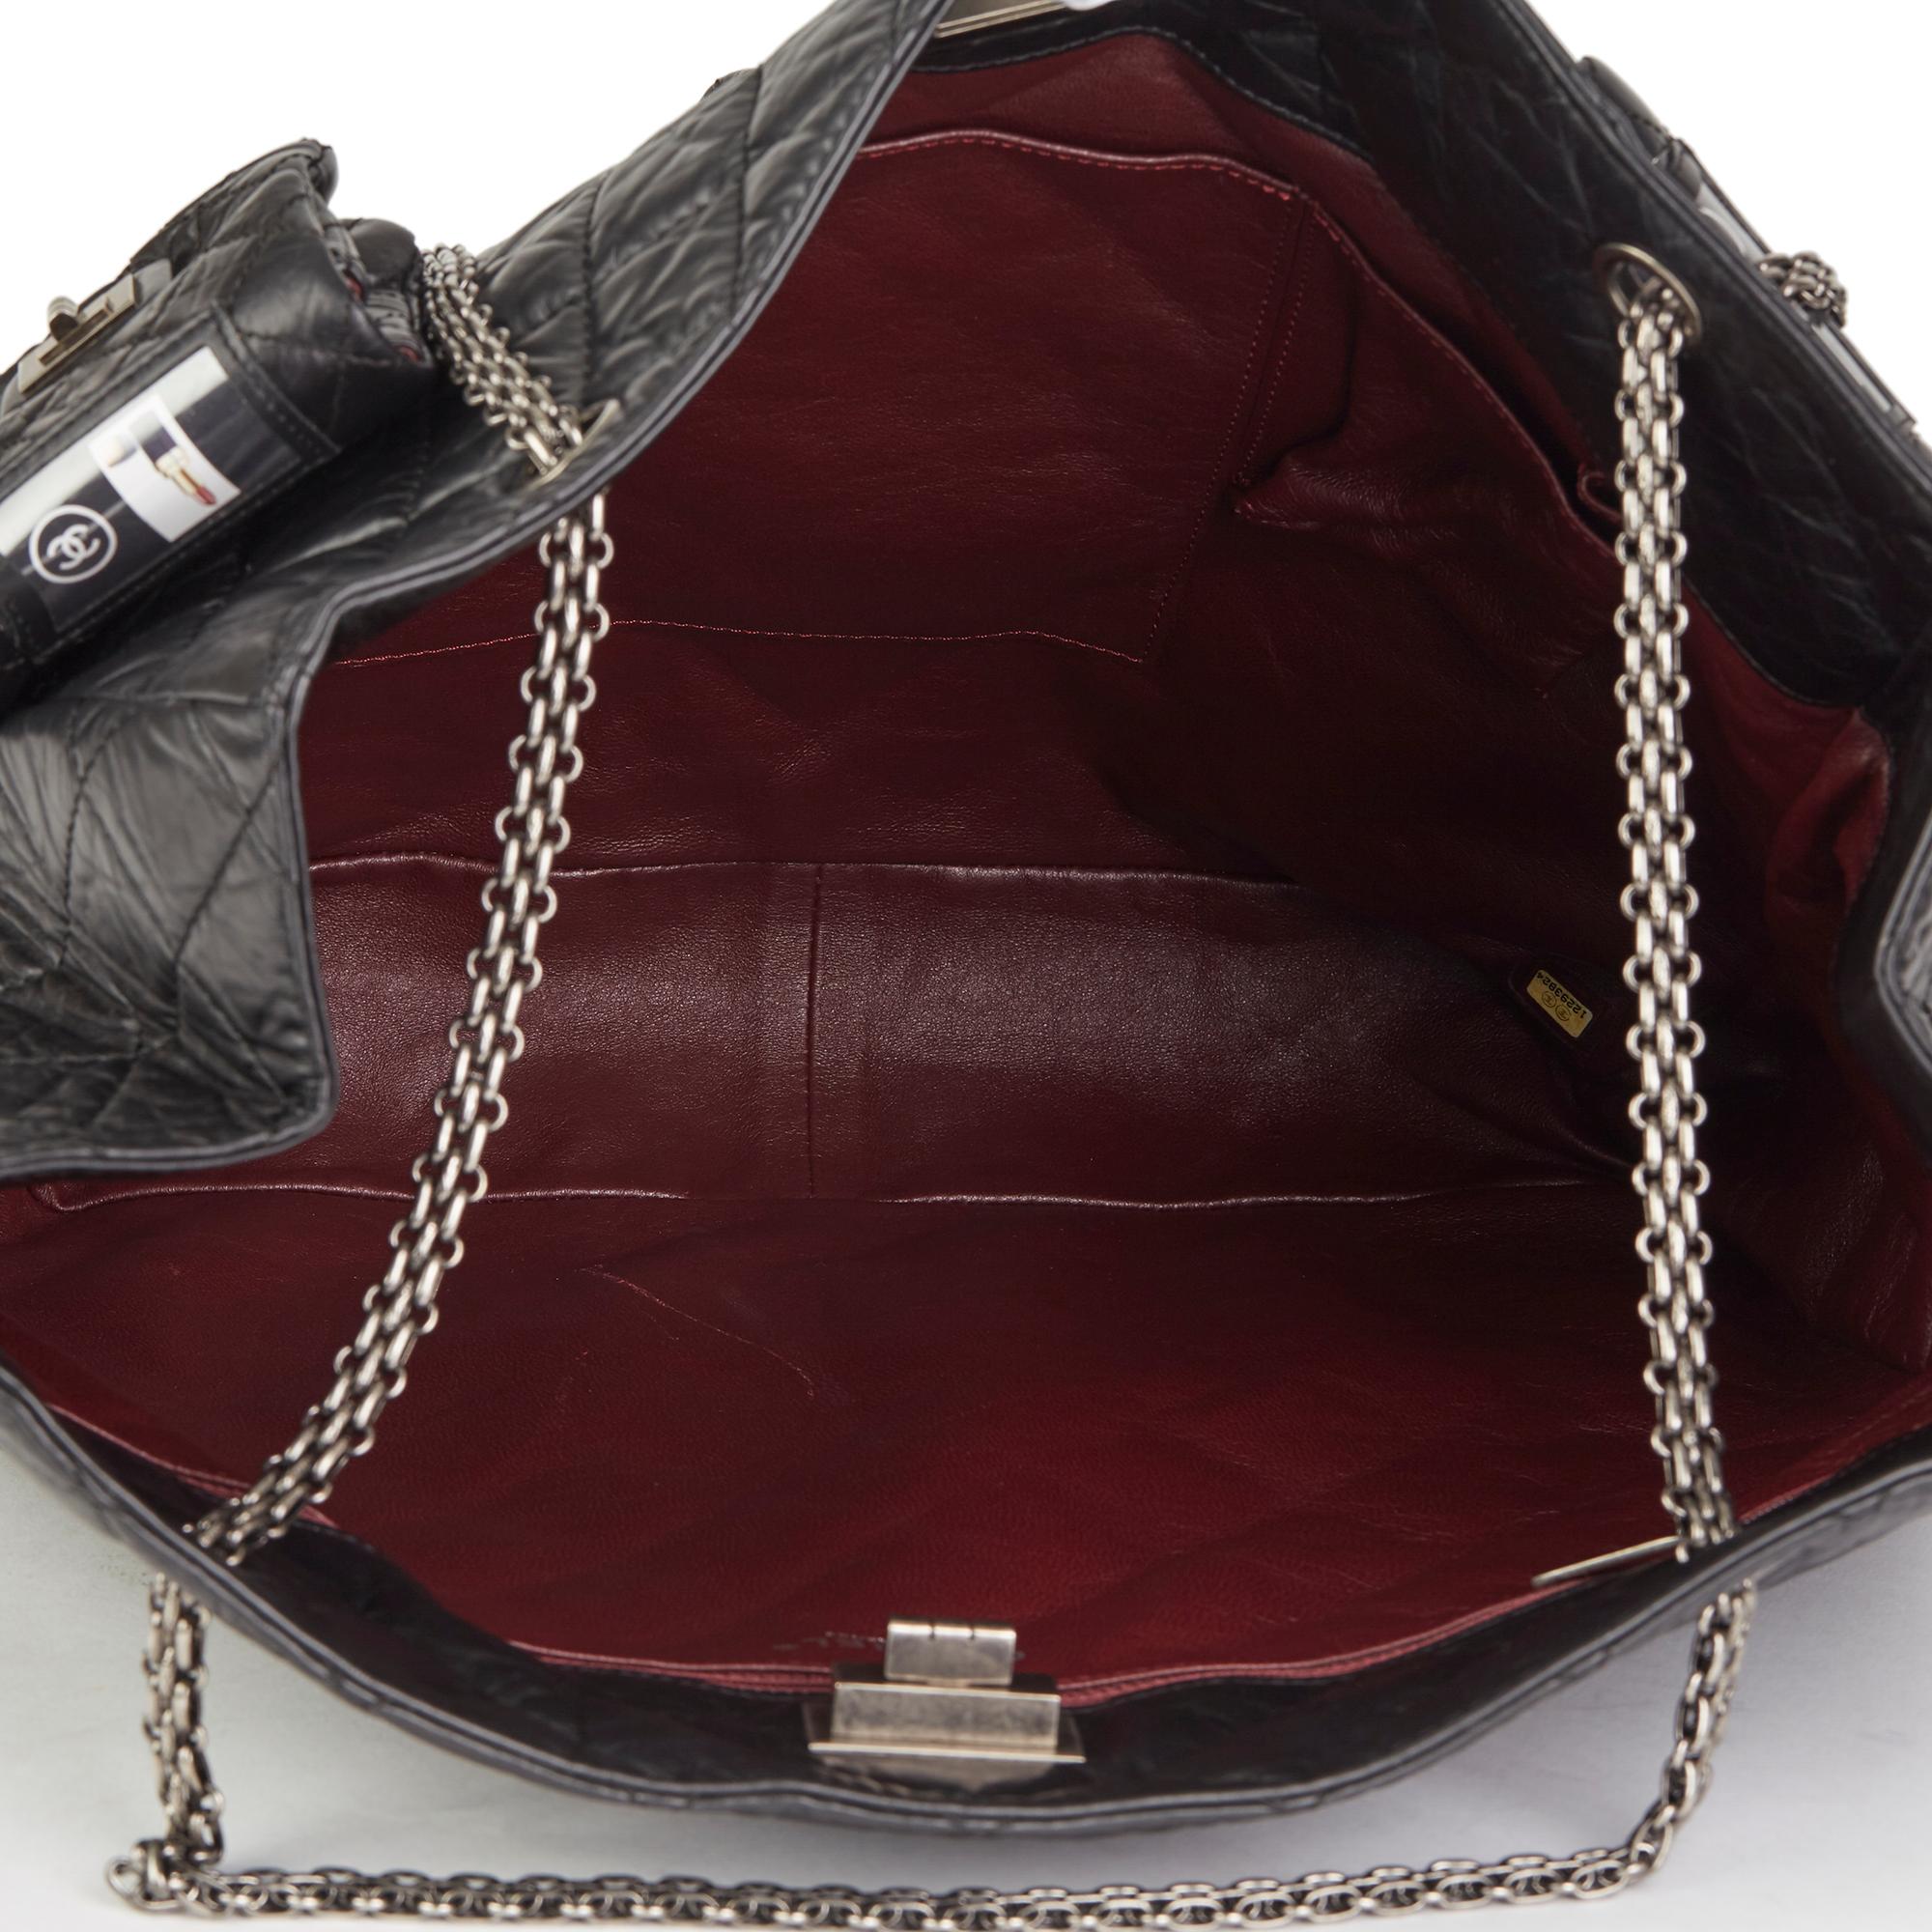 2009 Chanel Black Quilted Aged Calfskin Leather 5 Pocket Reissue Shoulder Bag  7